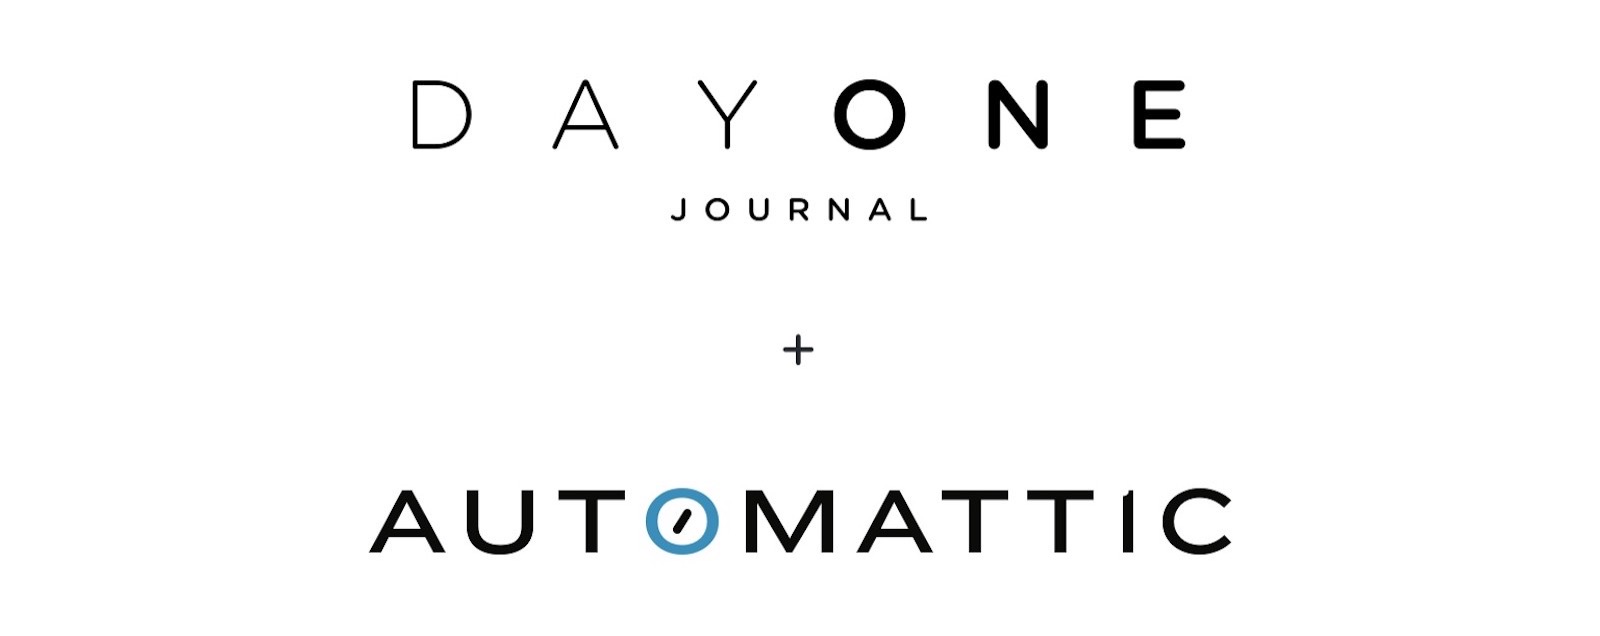 Dayone+automattic logo